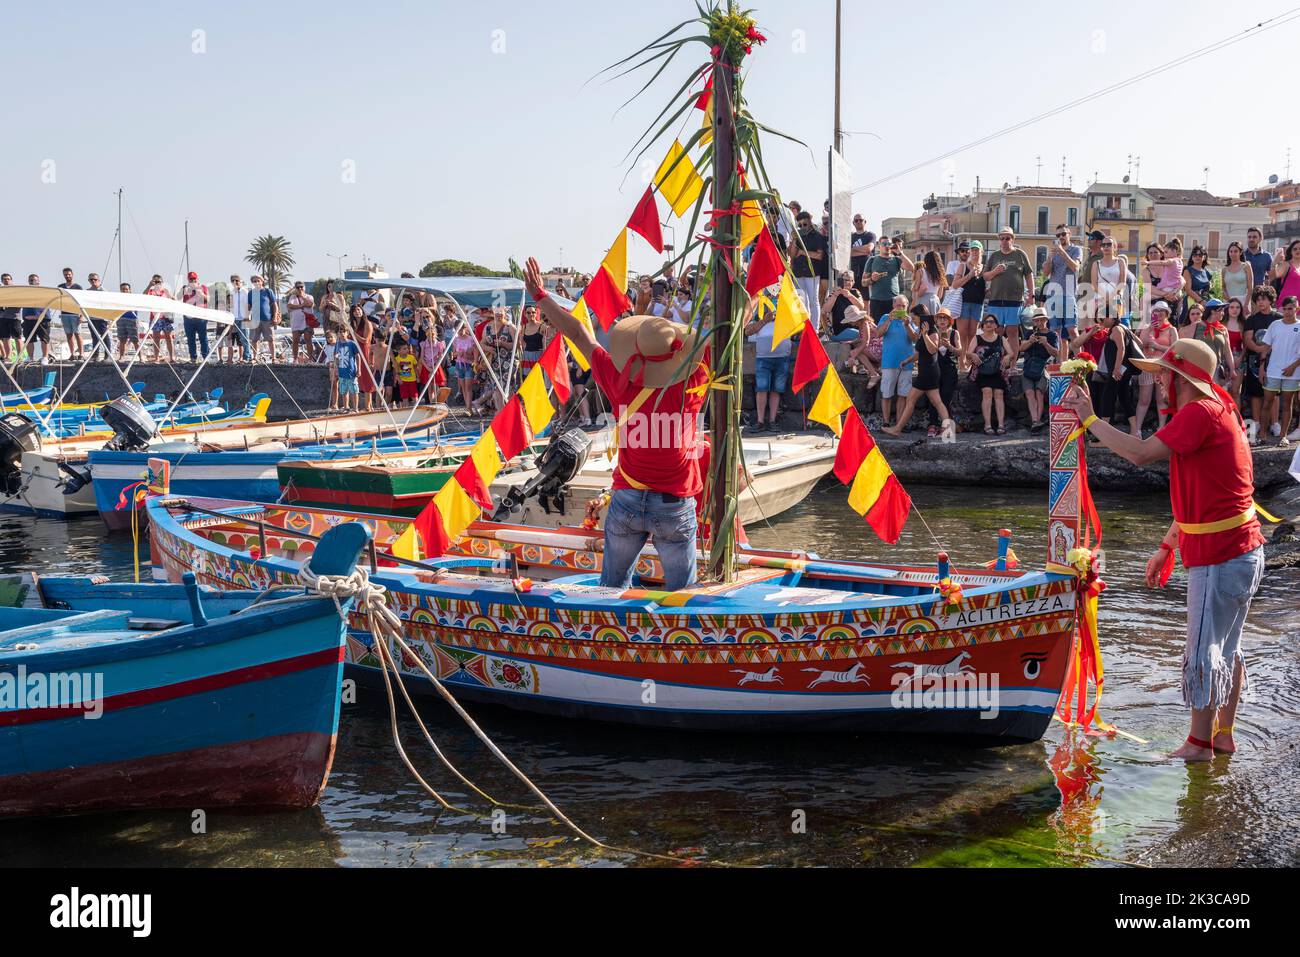 Le festival annuel de 'U Pisci a mari' dans le village sicilien d'ACI Trezza, près de Catane. Cela a lieu autour de la Fête de la Nativité de Saint Jean-Baptiste, à la fin du mois de juin. Il représente une expédition traditionnelle de pêche de l'espadon, qui avait lieu dans le détroit de Messine. La partie de l'espadon est jouée par un nageur, qui est pris à plusieurs reprises par les pêcheurs, sectionné dans le sang, mais parvient d'une manière ou d'une autre à s'échapper. Finalement, l'espadon parvient à renverser le bateau. Banque D'Images